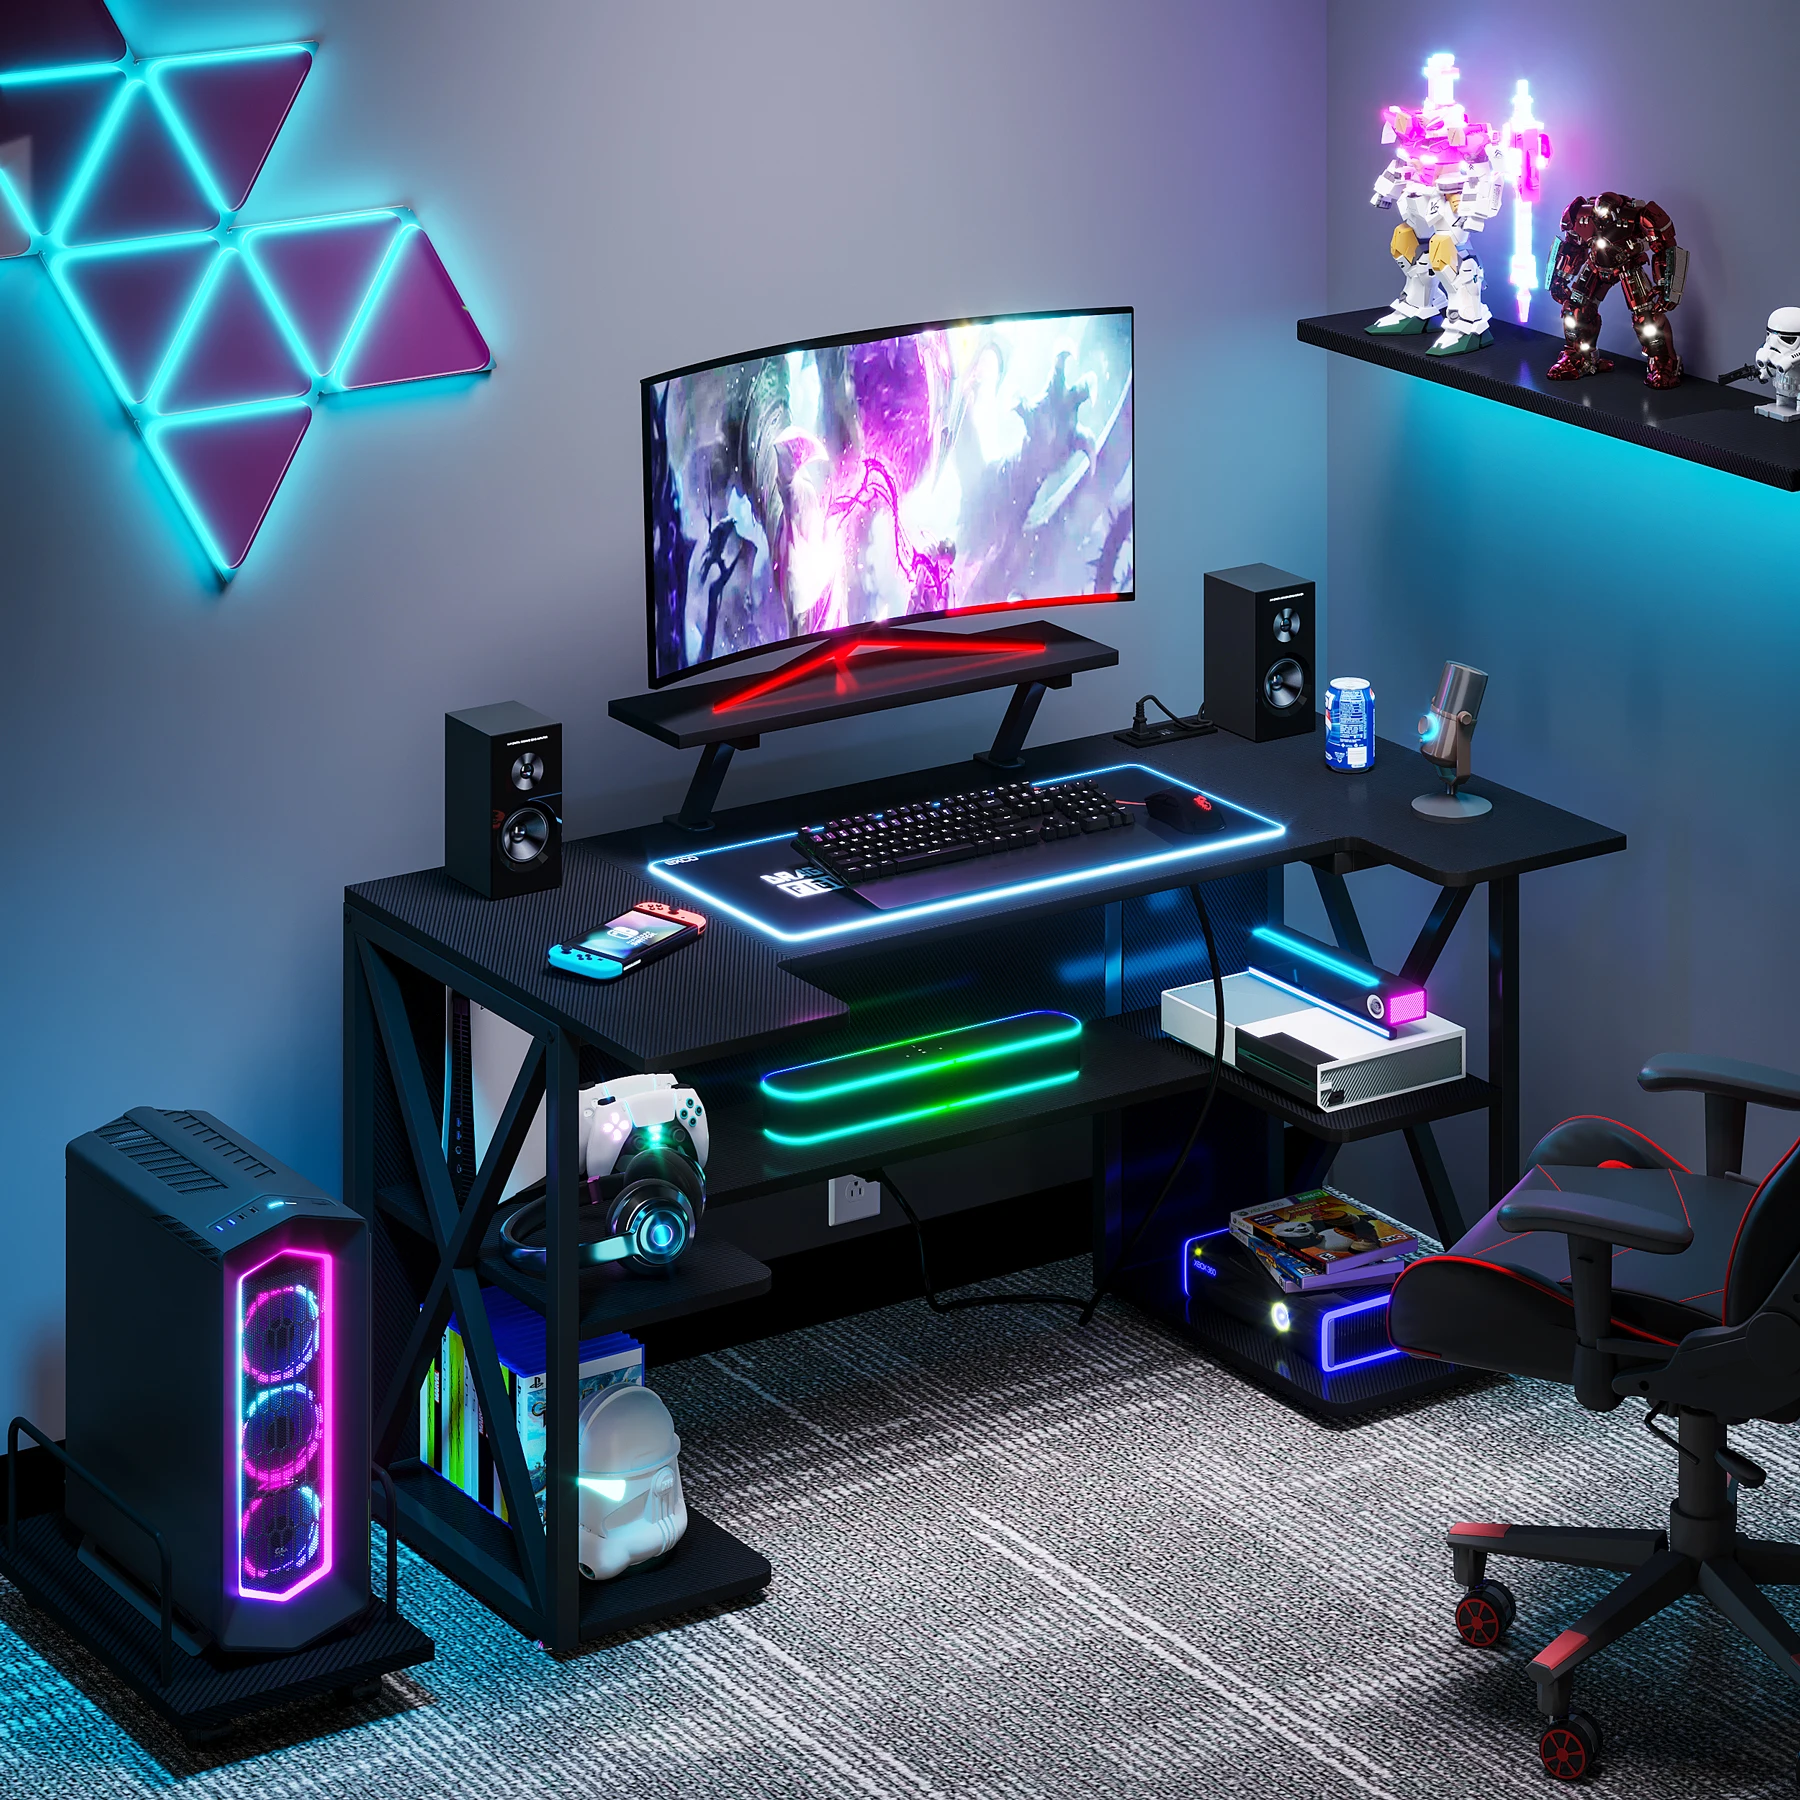 Modern LED Lights Computer PC Gamer Desk Gaming Table For Home Or Internet Cafe